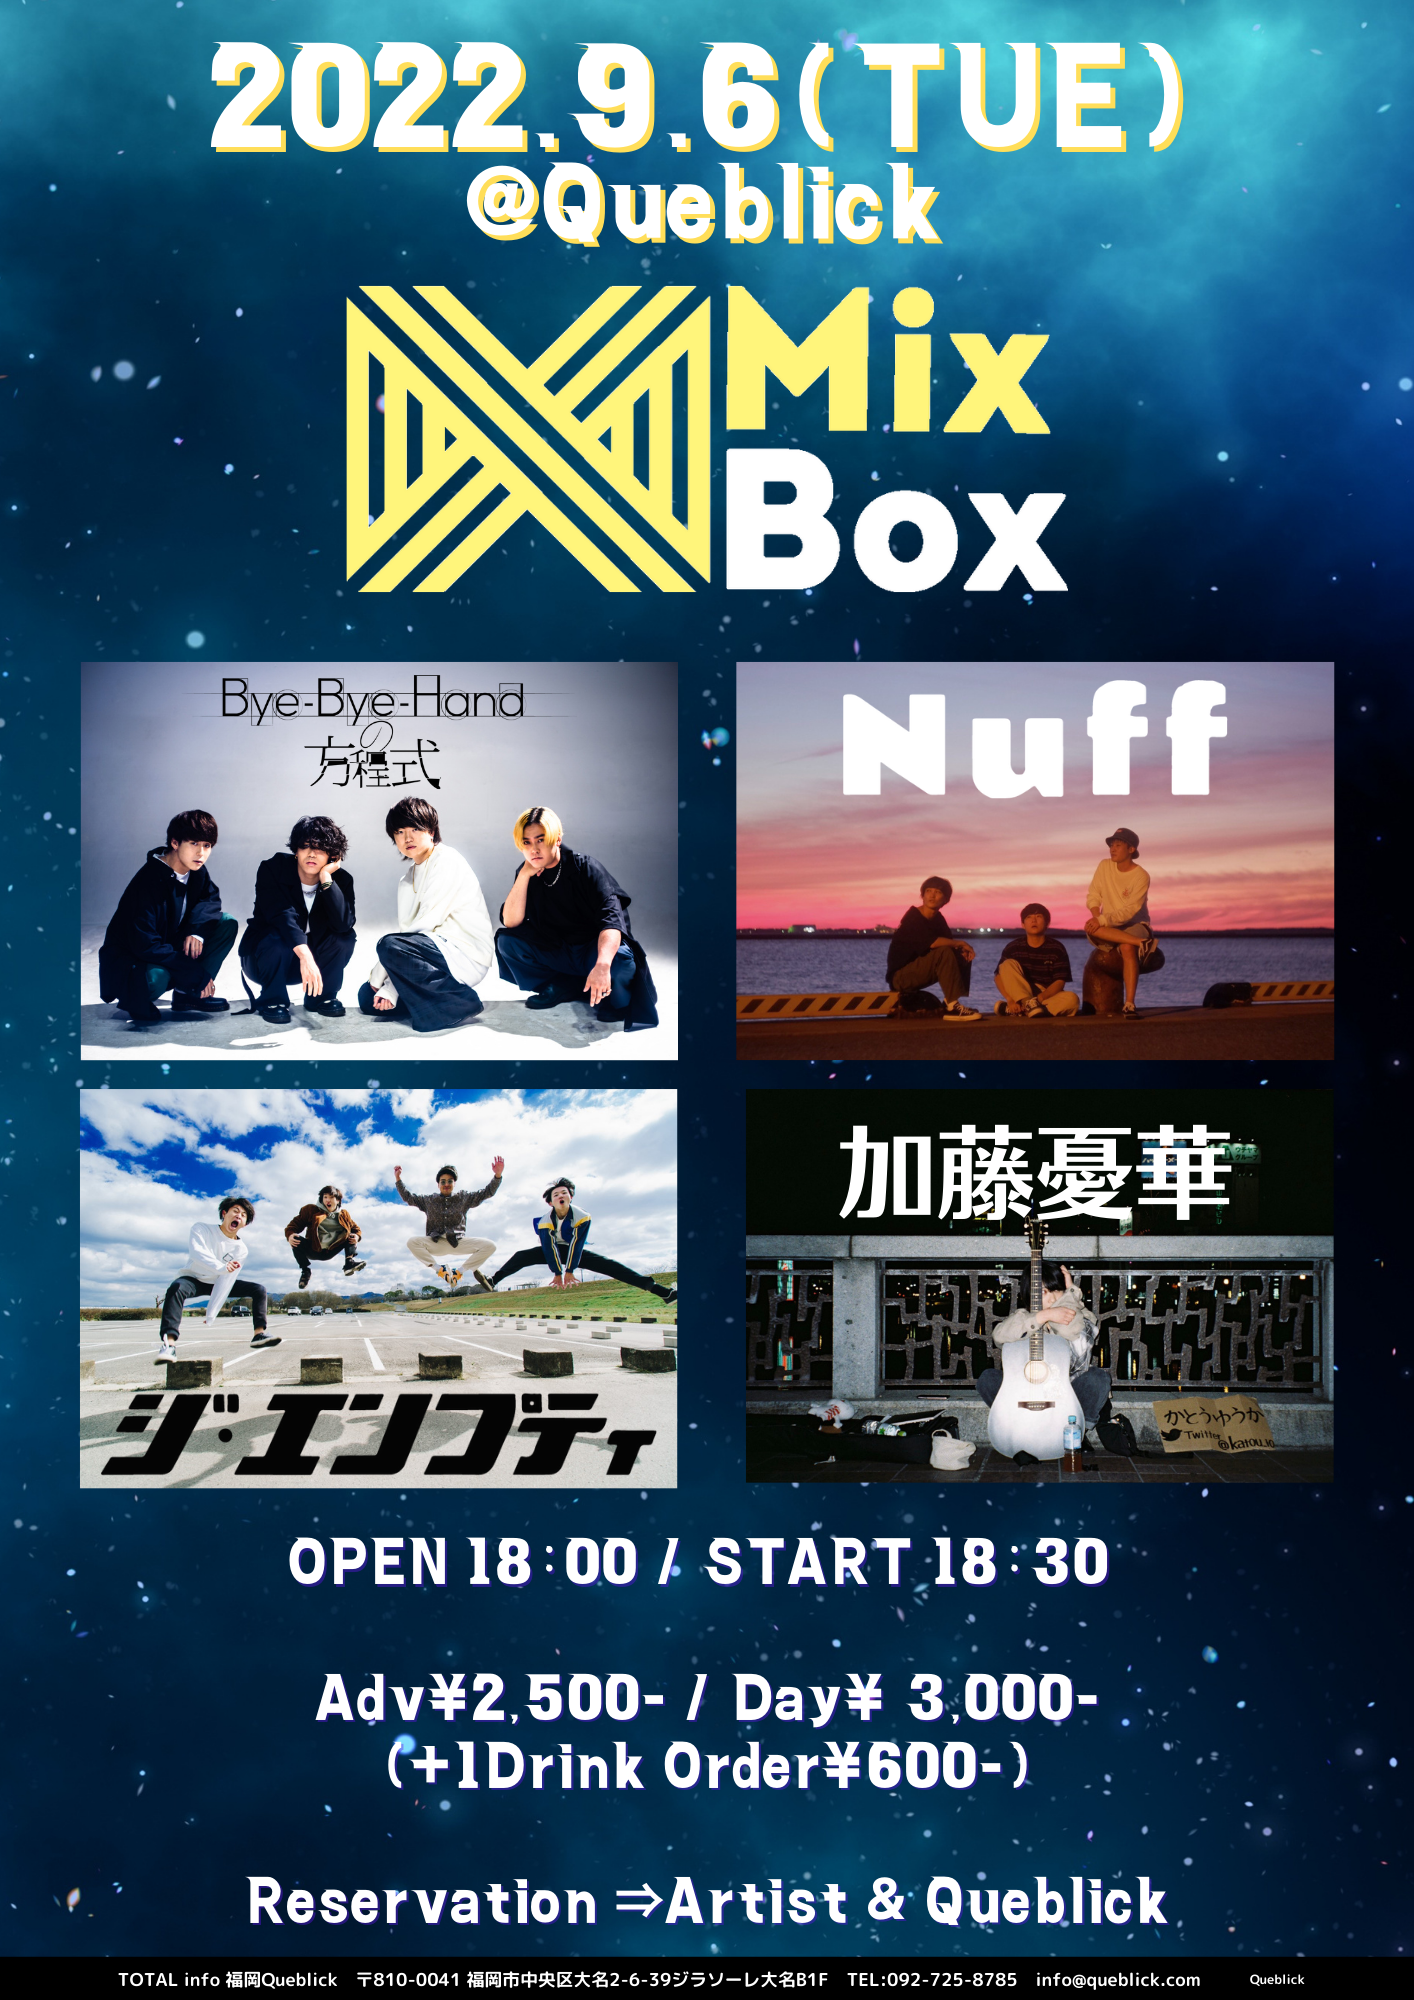 Mix Box